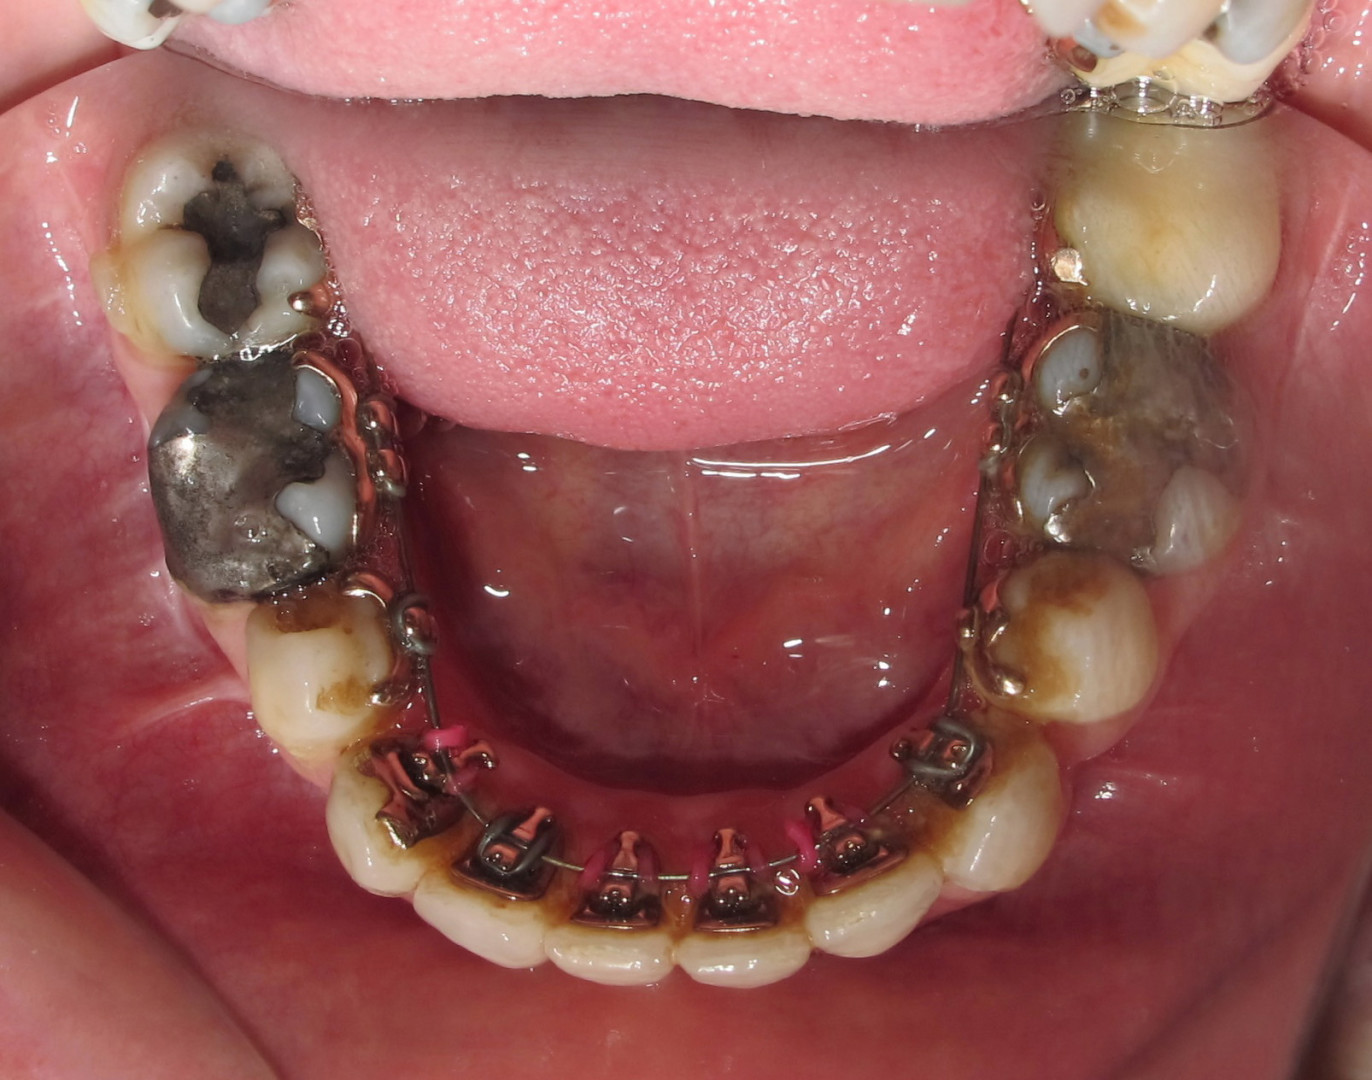 4 - arcade mandibulaire en cours de traitement avec un appareil lingual